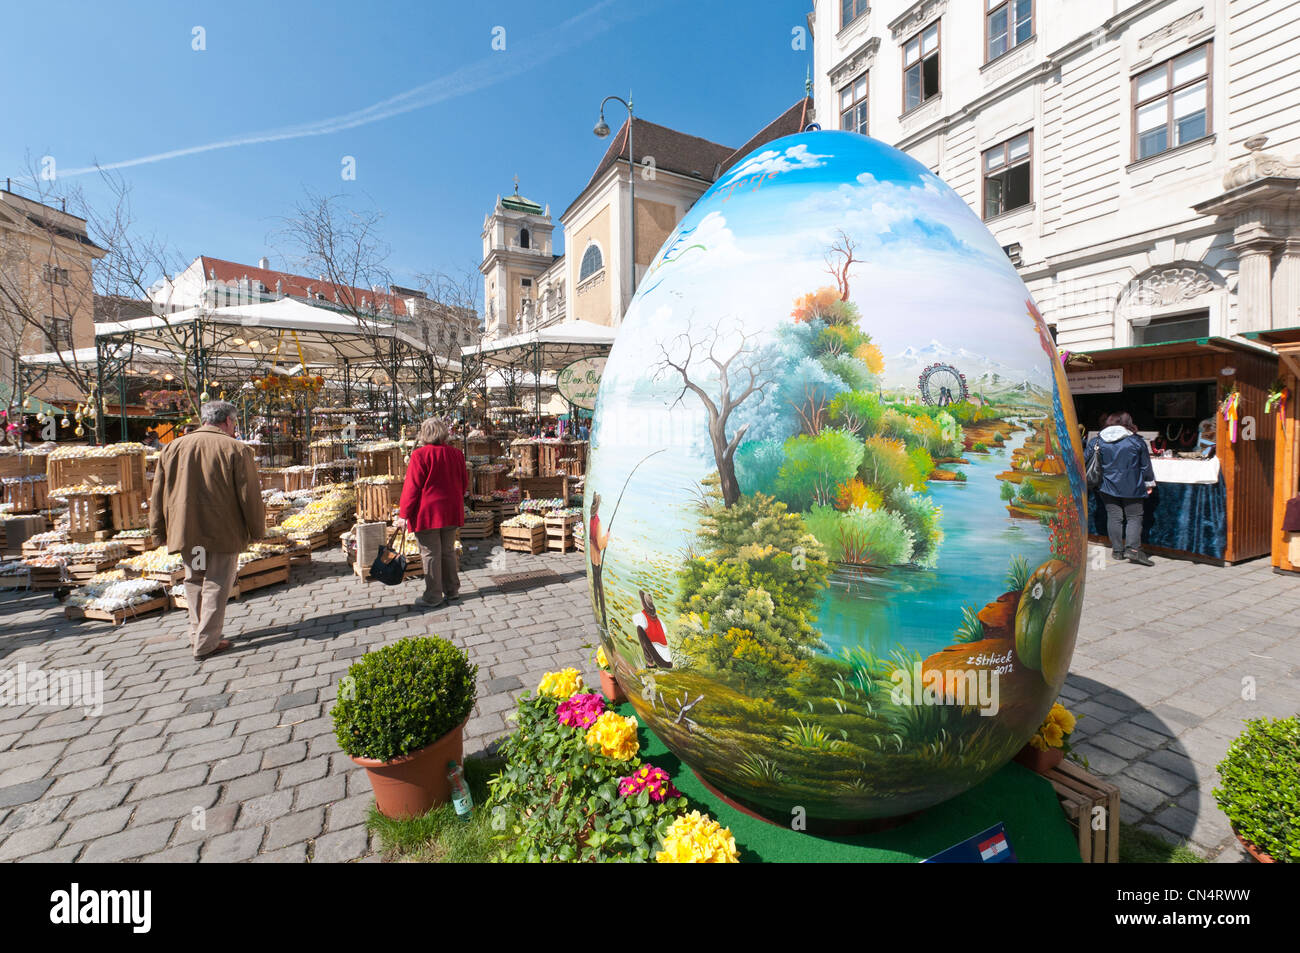 Un oeuf peint géant marque l'entrée du Vieux Vienne Marché de Pâques à la Freyung, Vienne. Banque D'Images